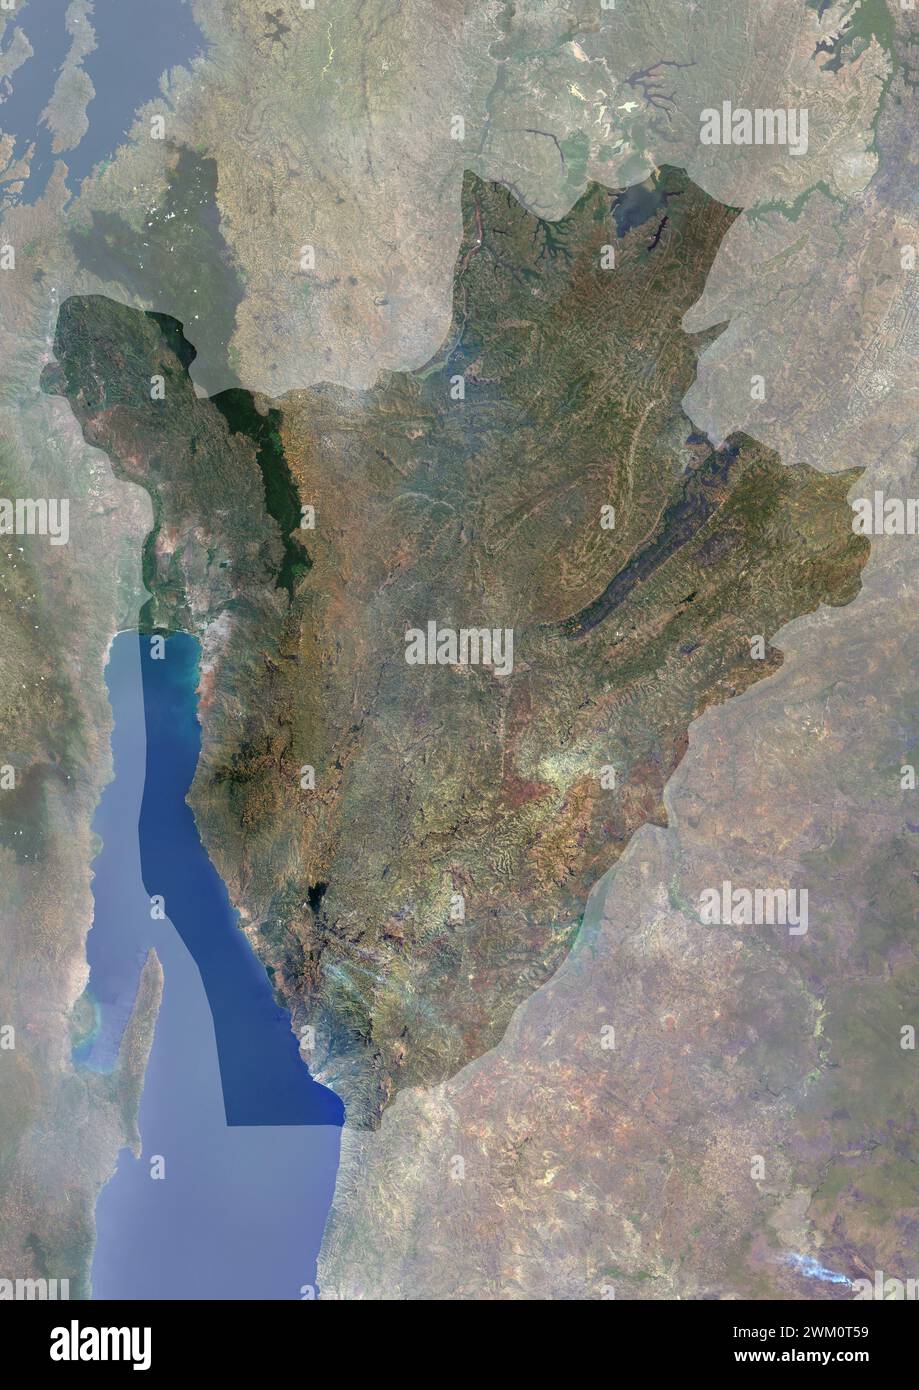 Immagine satellitare a colori del Burundi, con maschera. Il paese si trova nella Great Rift Valley. Il lago Tanganica si trova lungo il suo confine sud-occidentale. Foto Stock